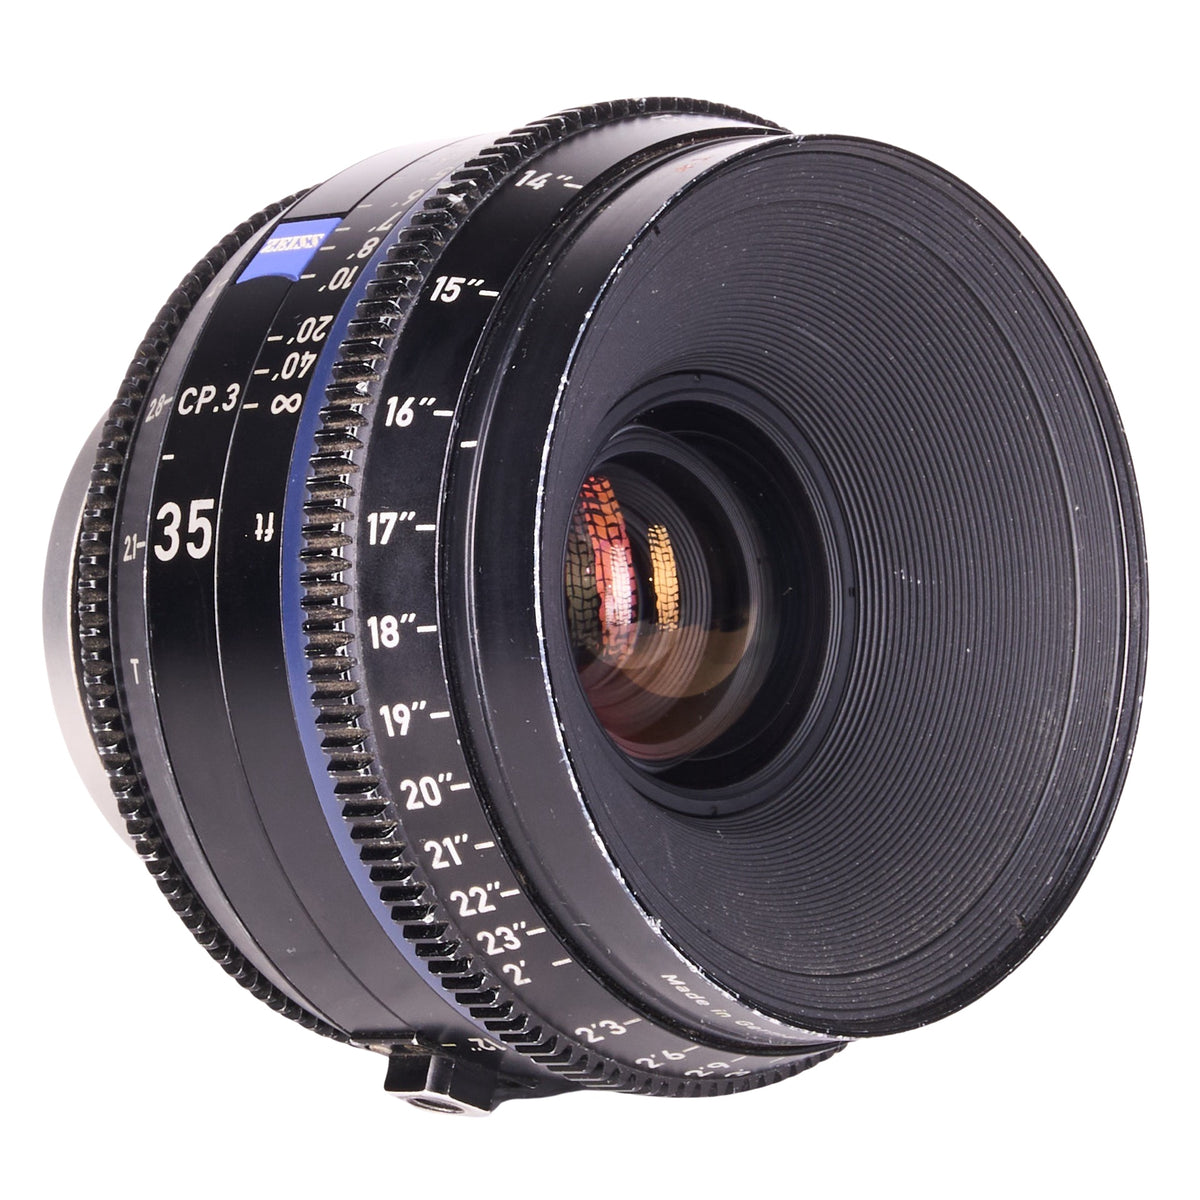 LENS3550-8901 Zeiss CP.3 Lens Set 15mm 25mm 35mm 50mm 85mm EF Mount_000683.JPG